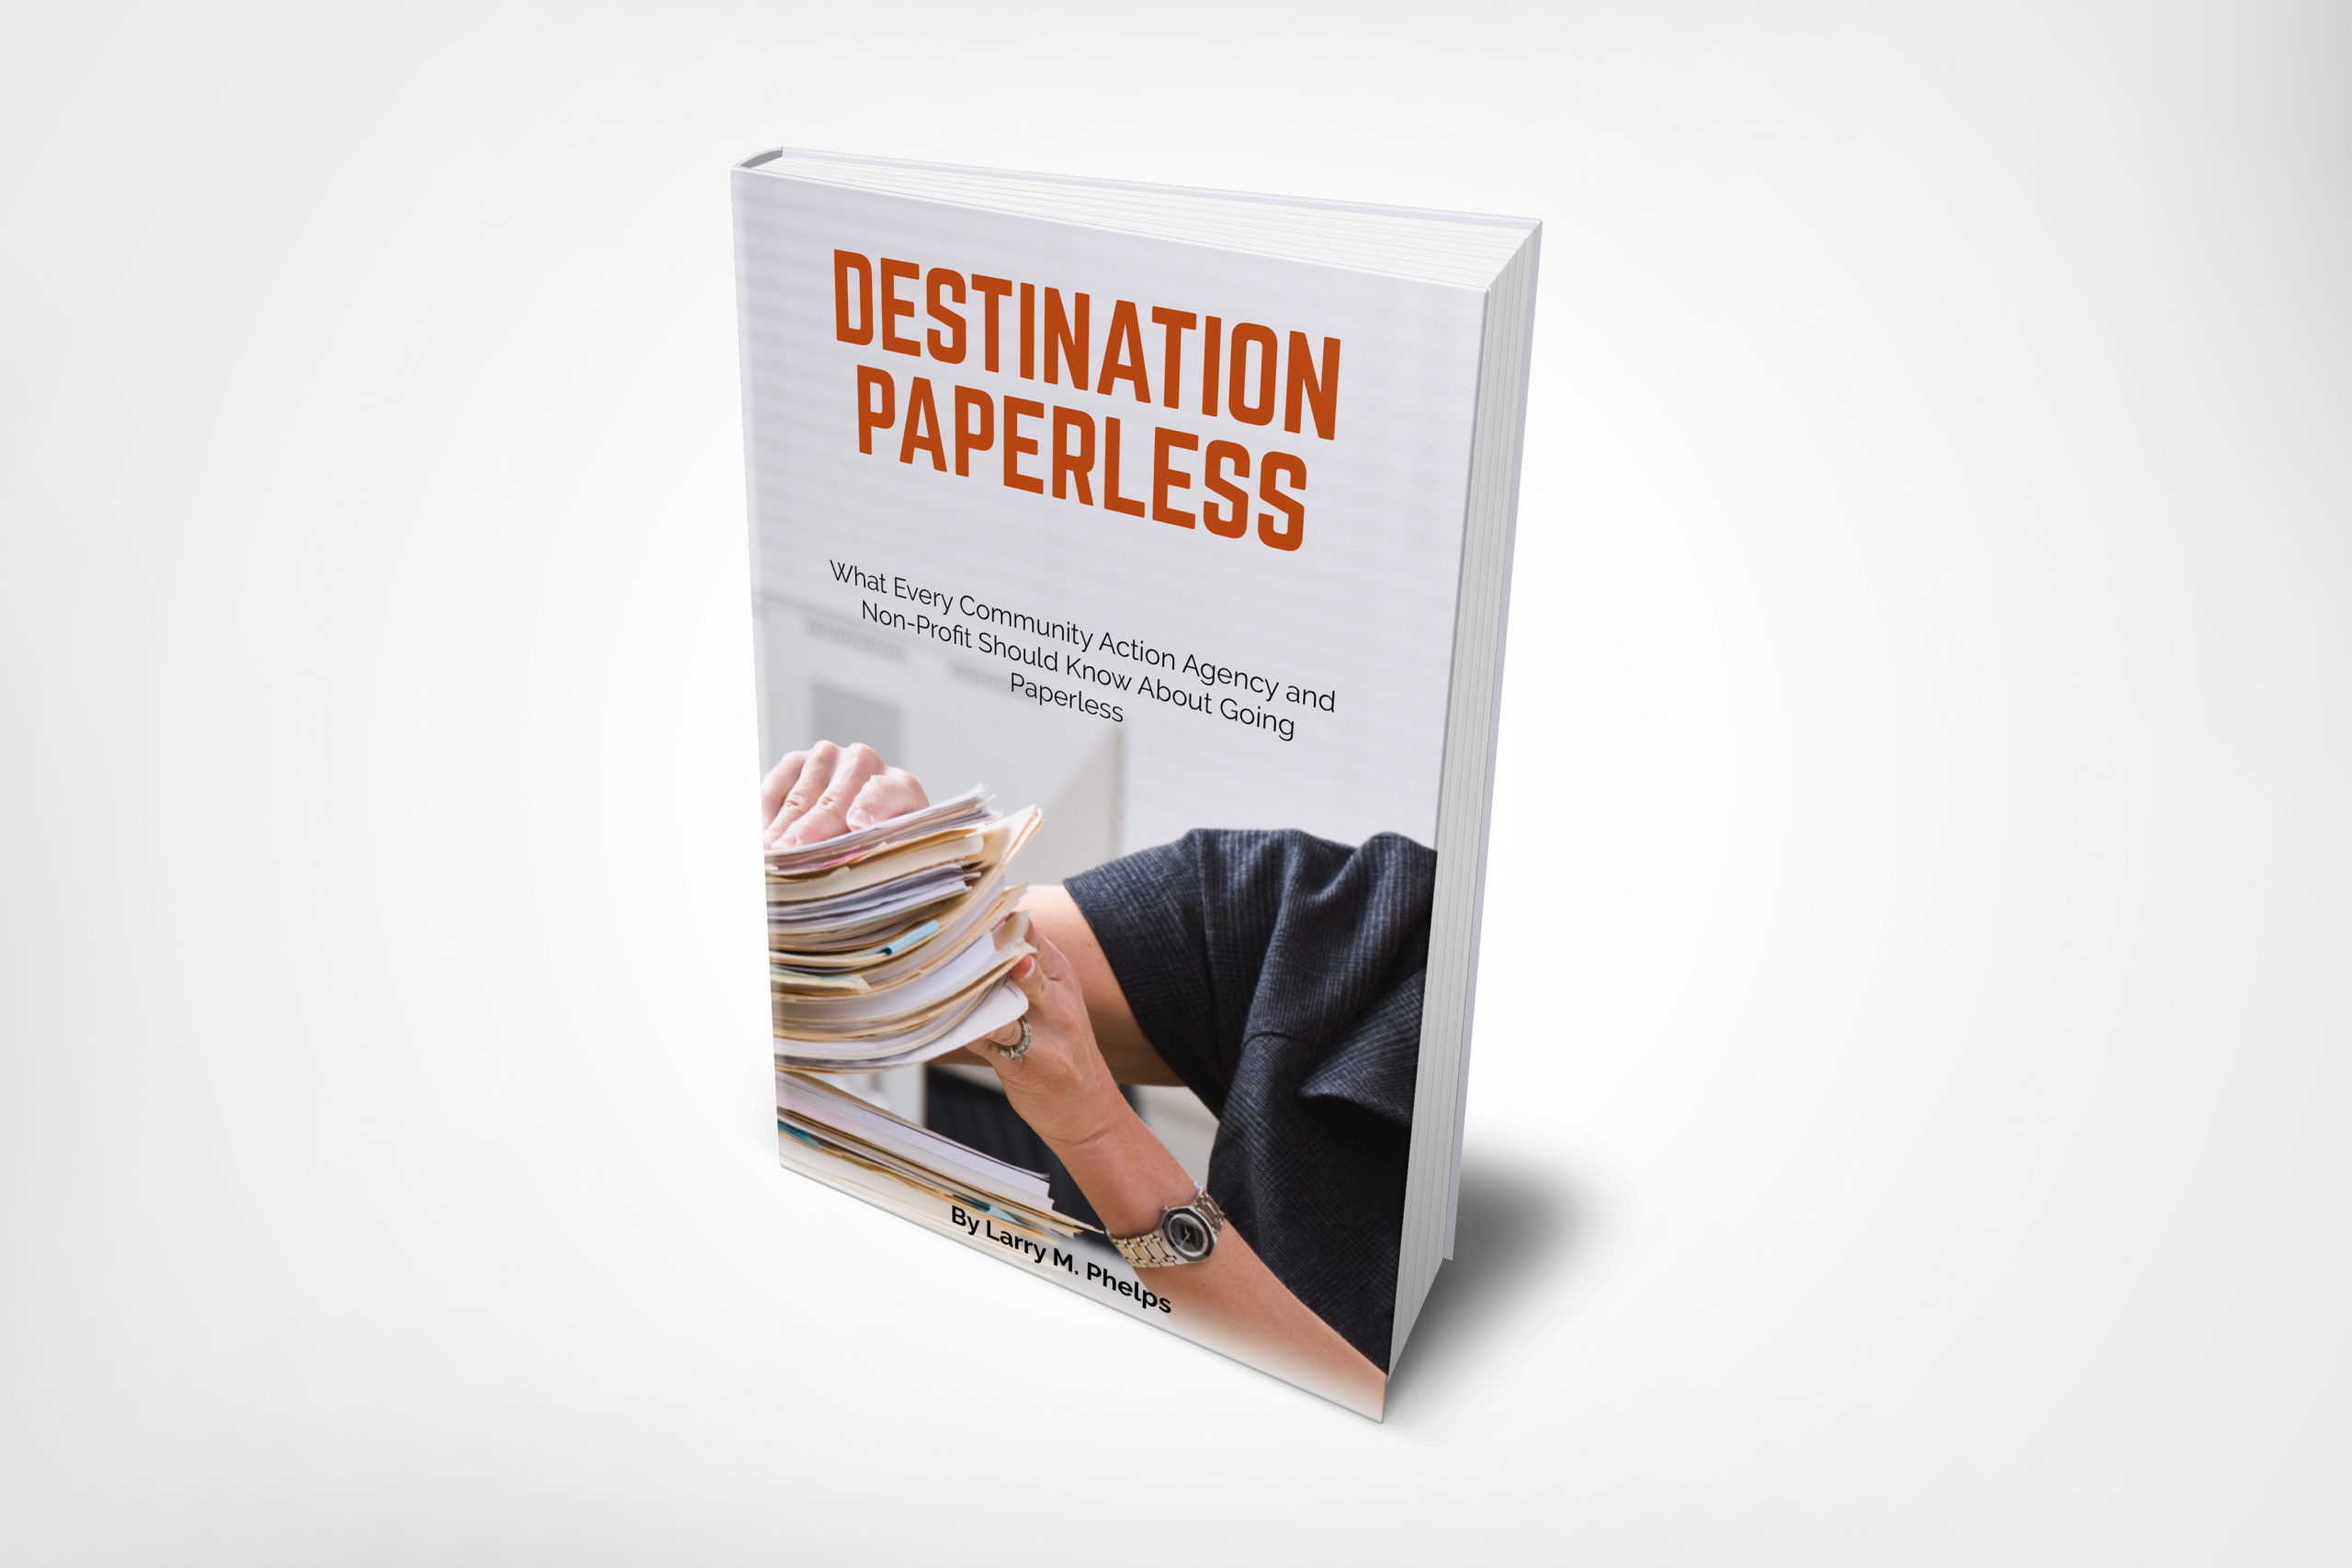 Destination paperless book